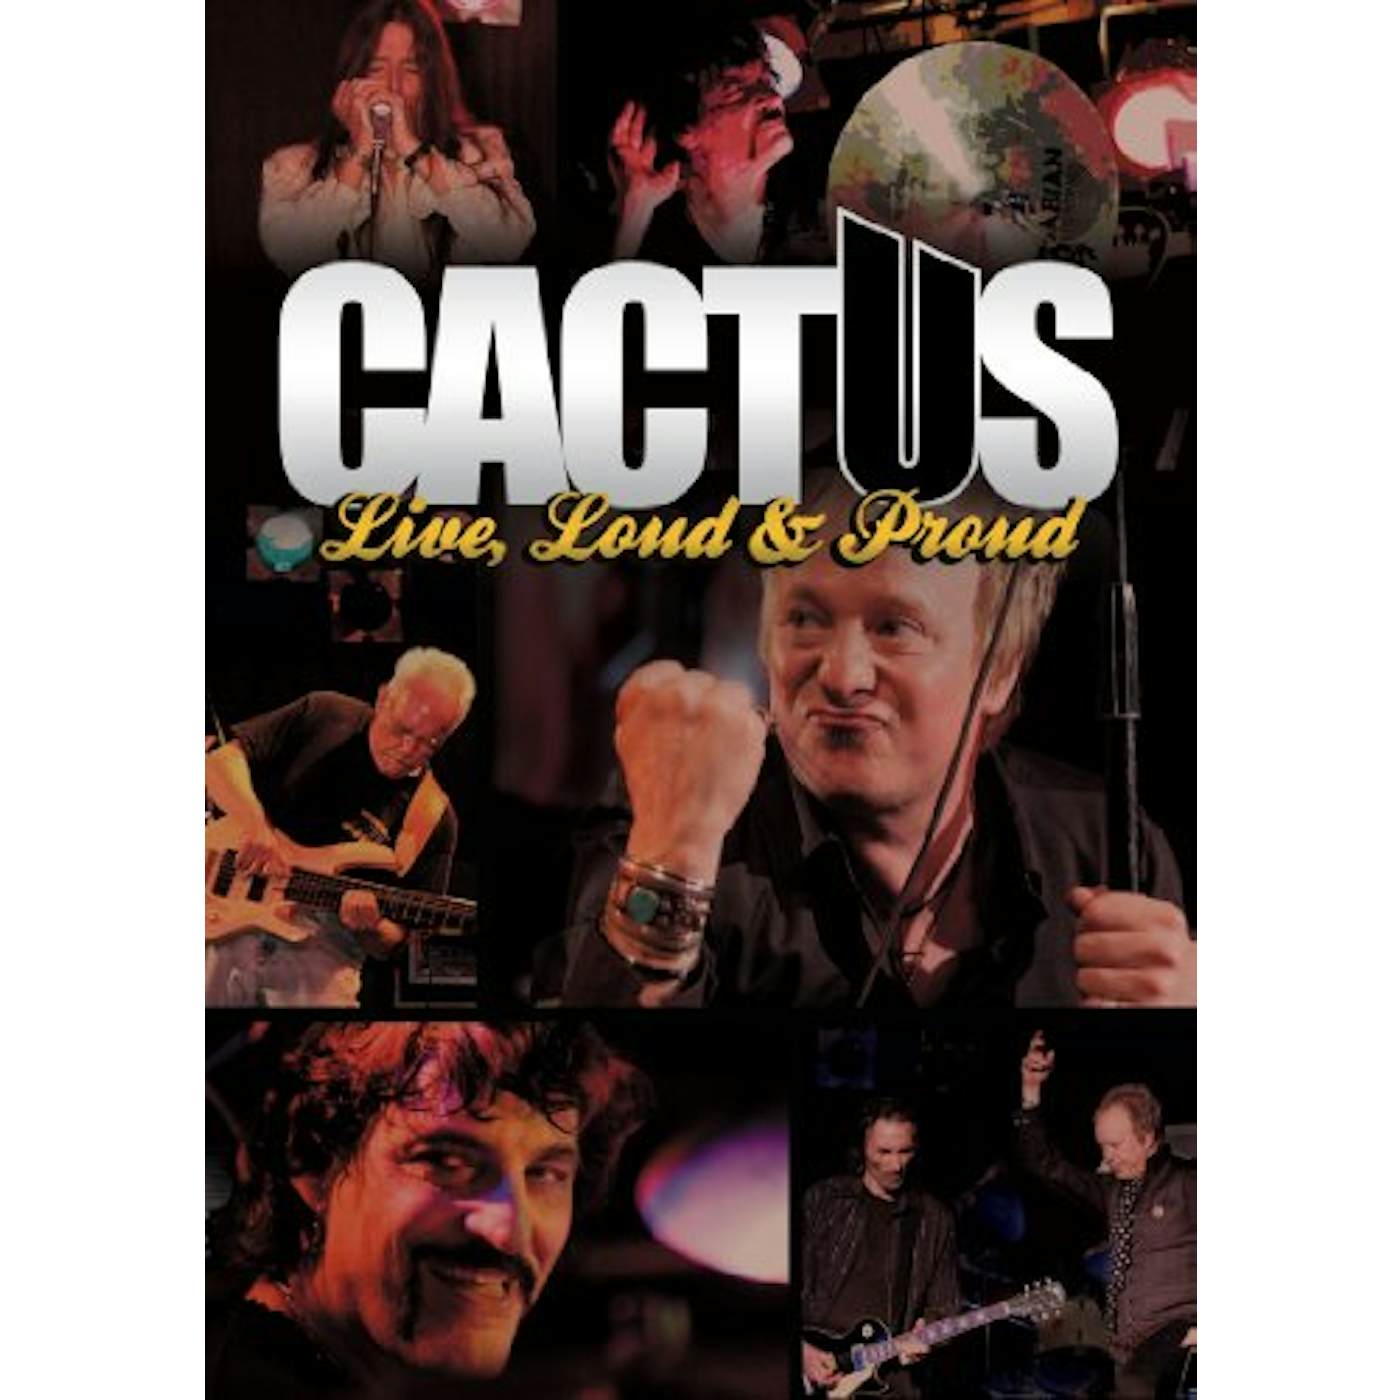 Cactus LIVE LOUD & PROUD DVD